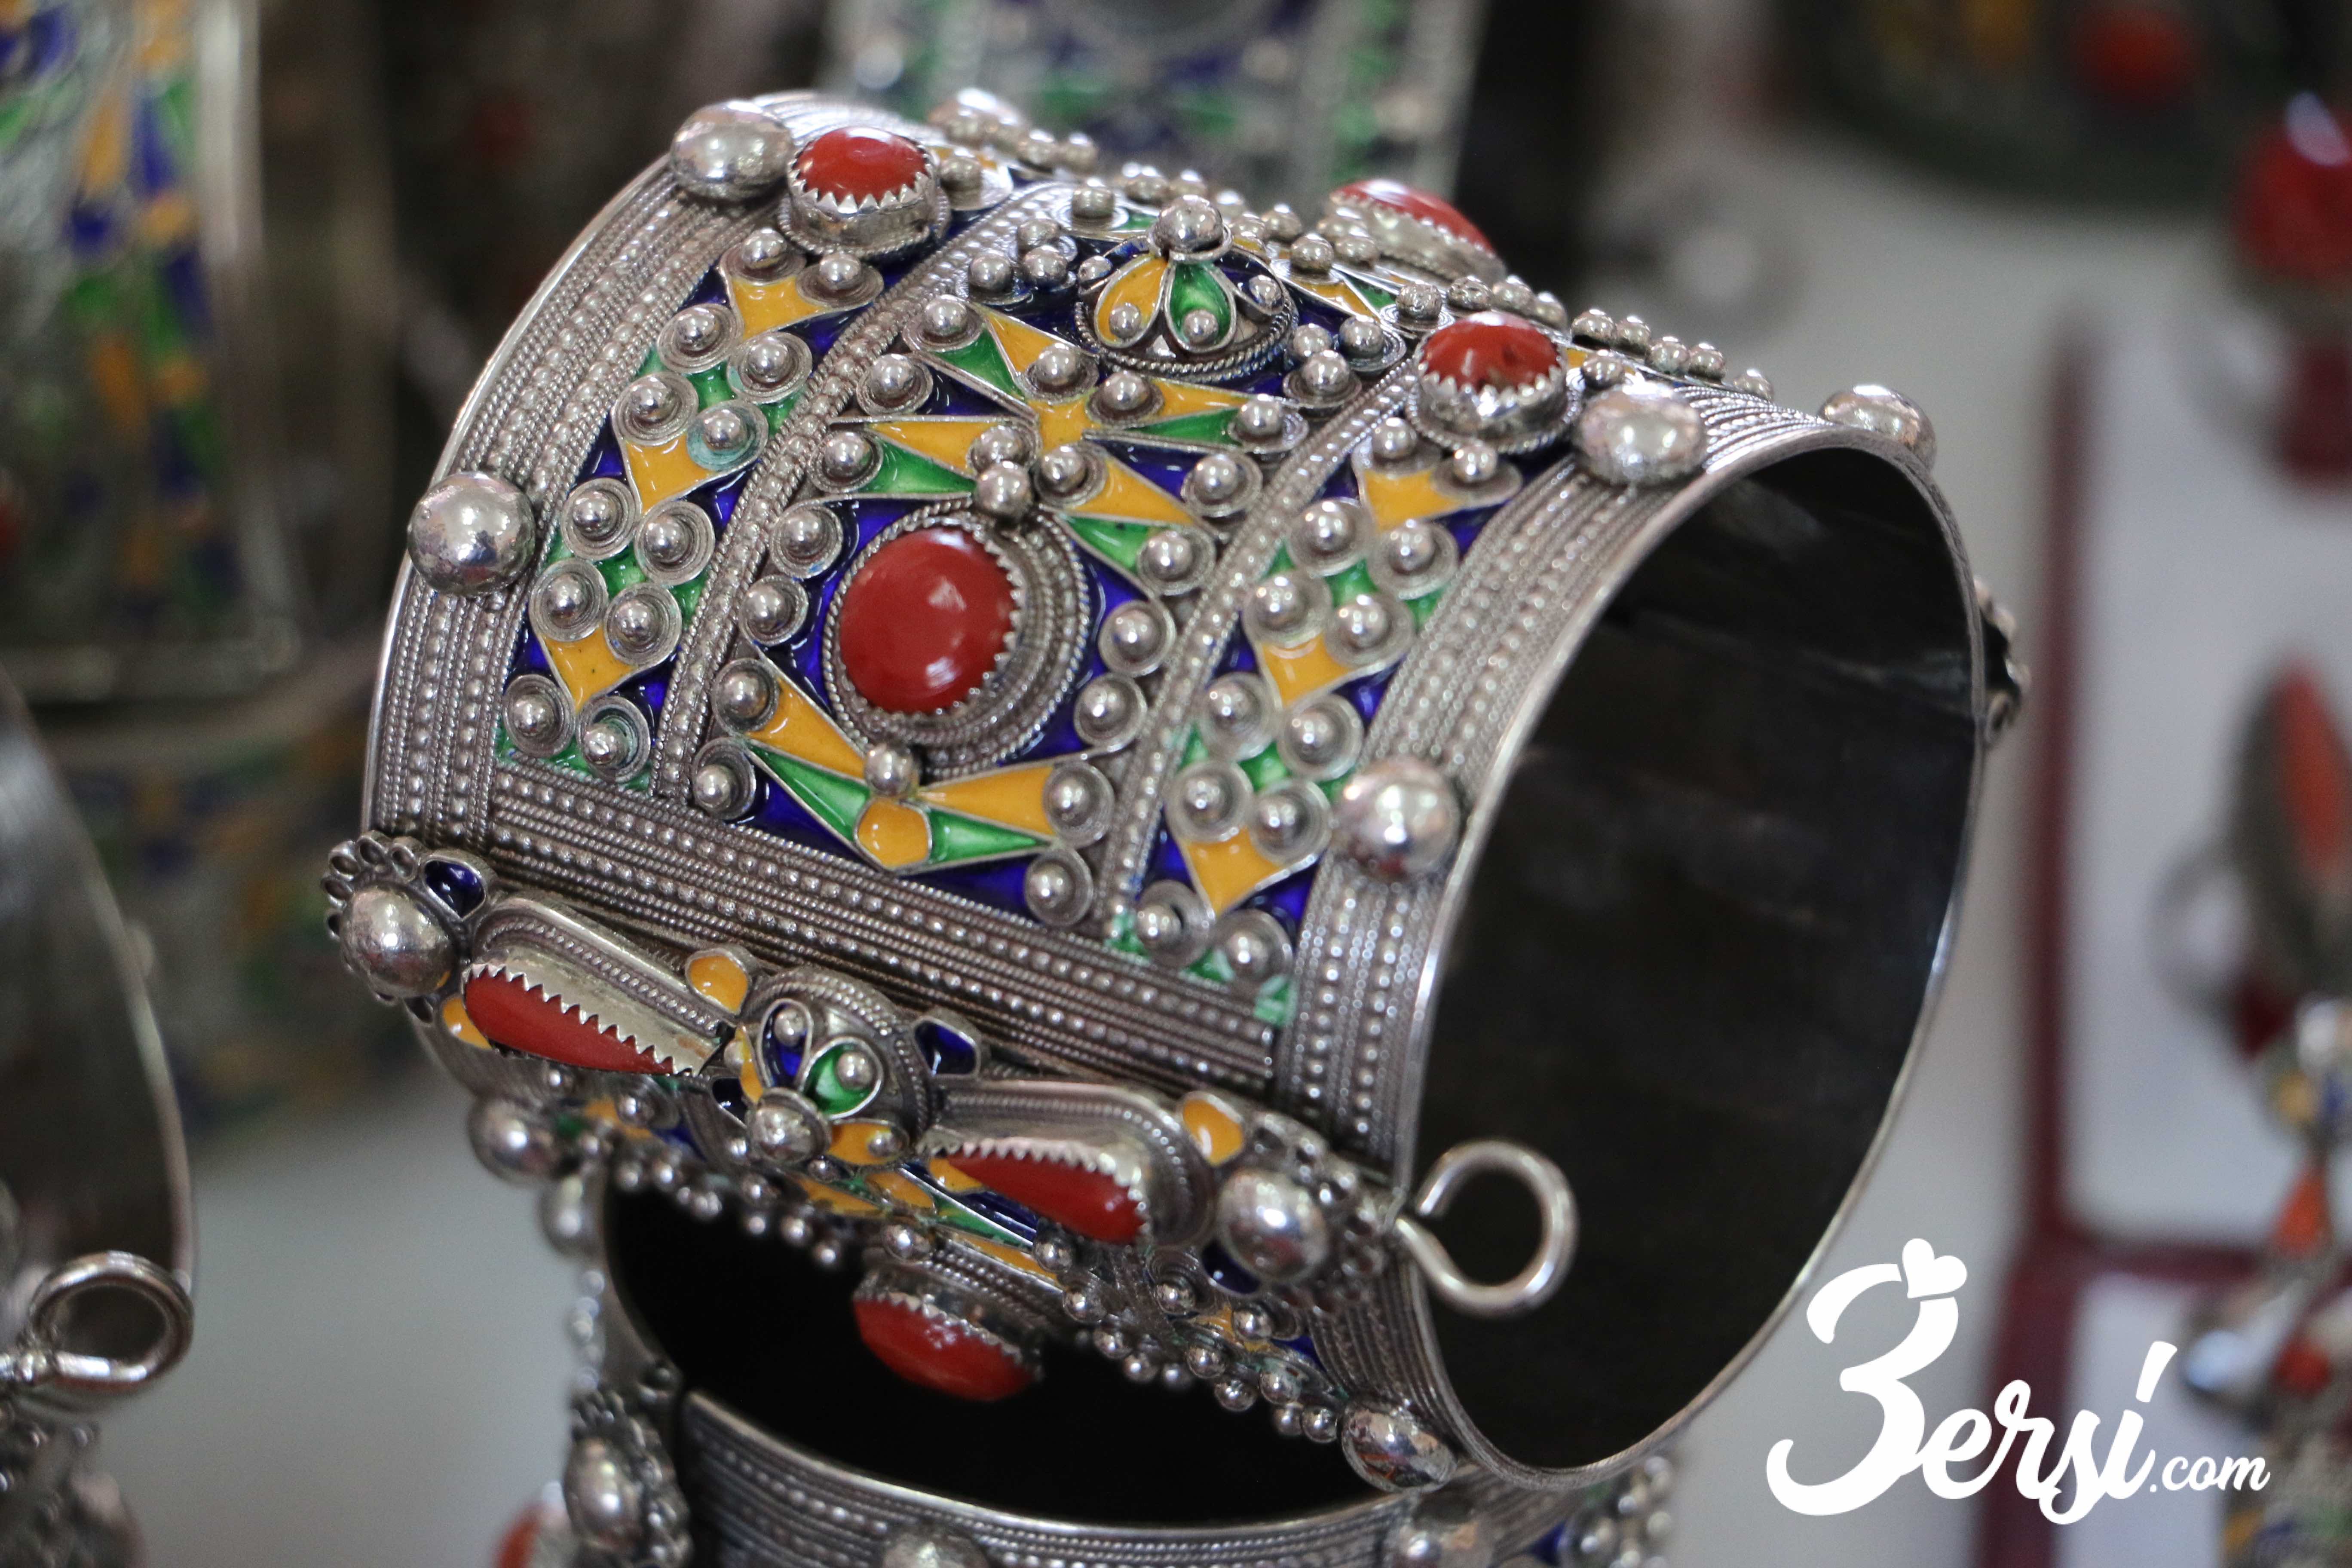 Amechloukh (bracelet), fête du bijoux d'Ath Yenni, 2018 - 3ersi.com